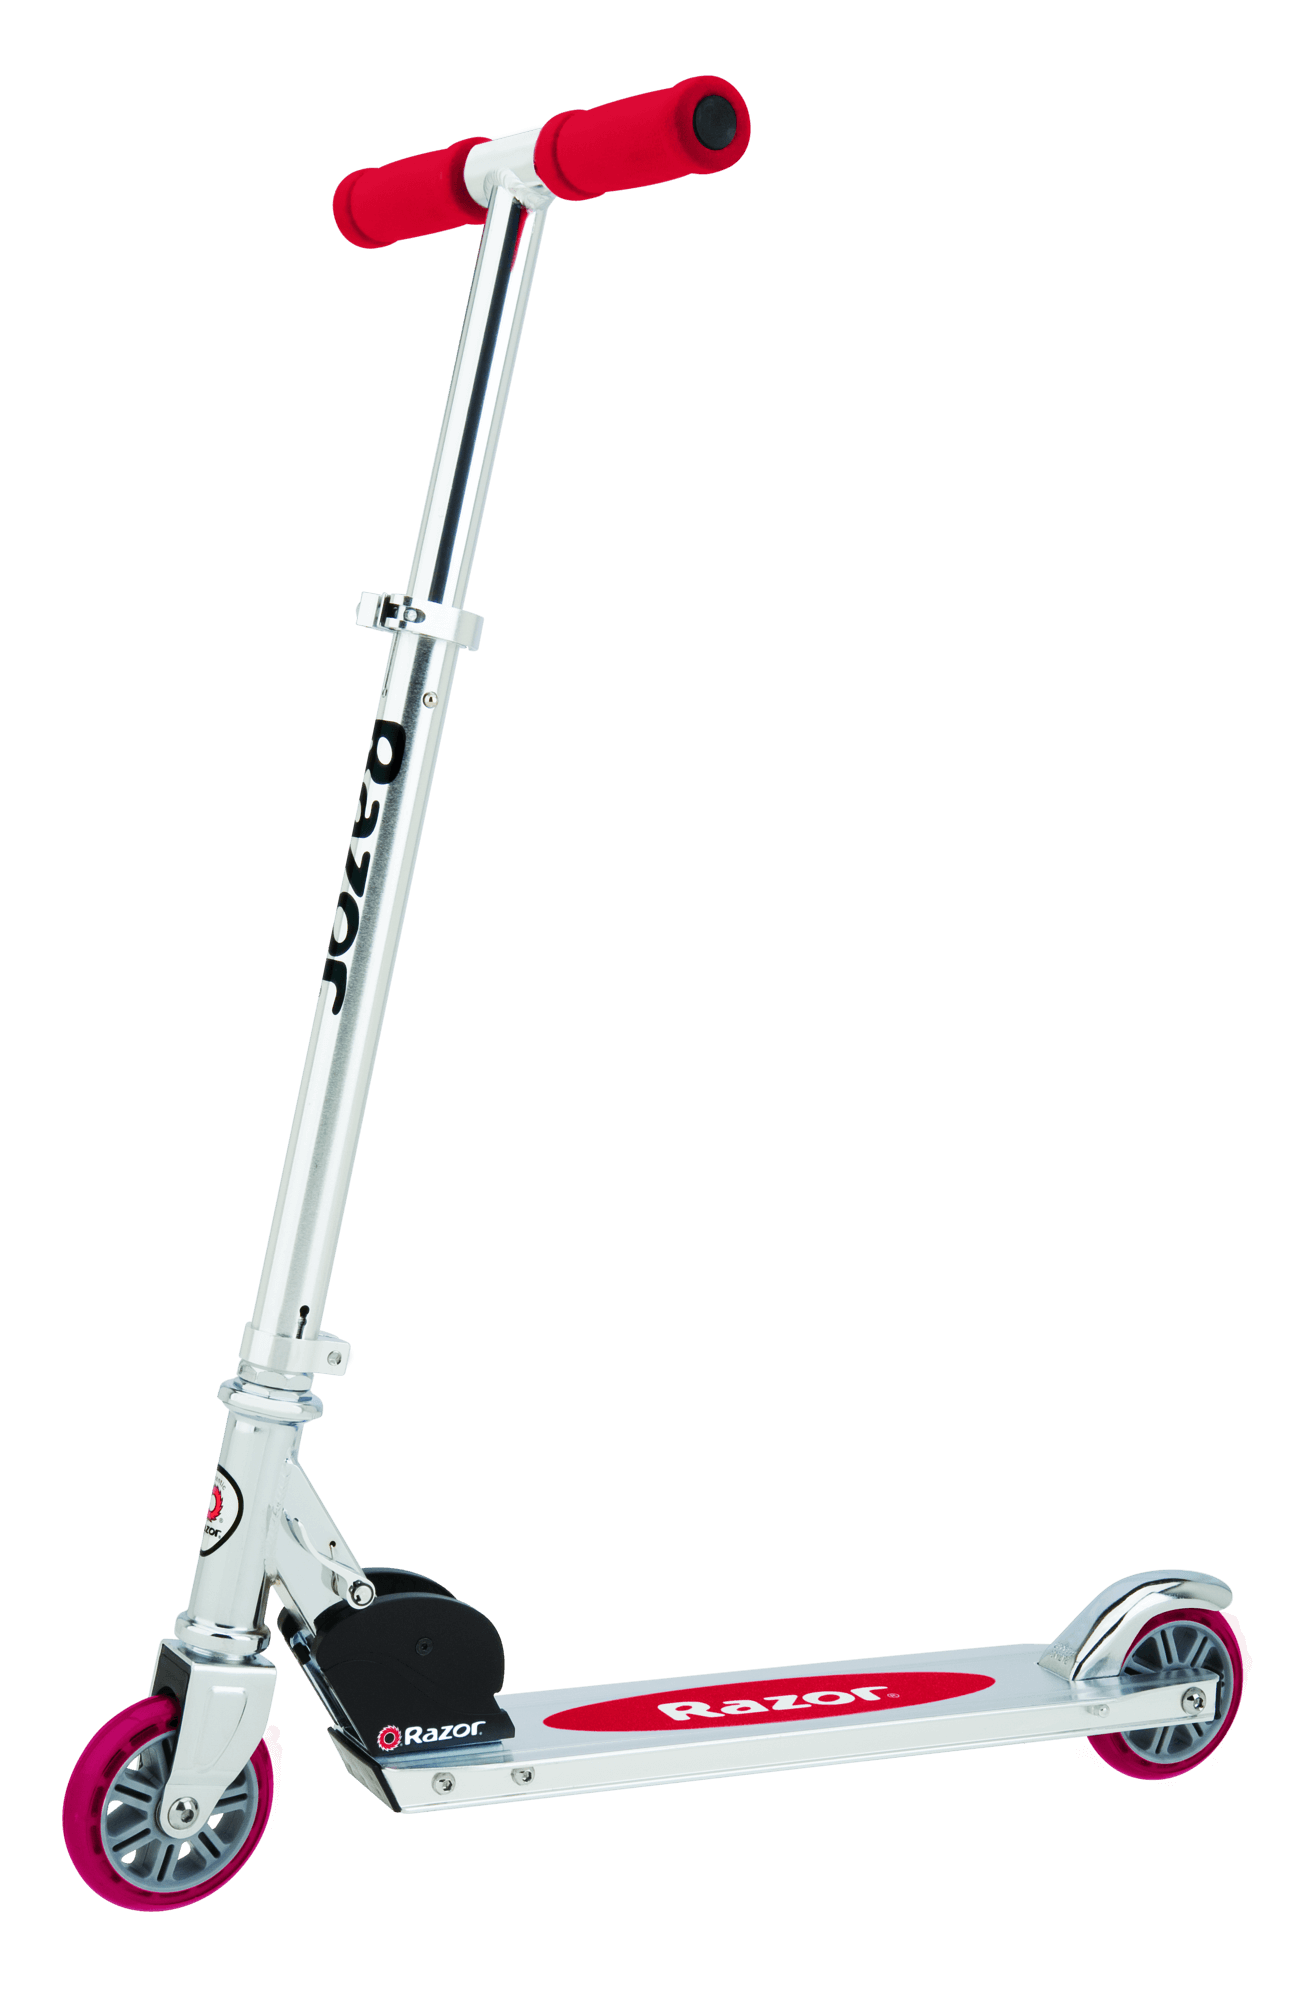 micro razor scooter